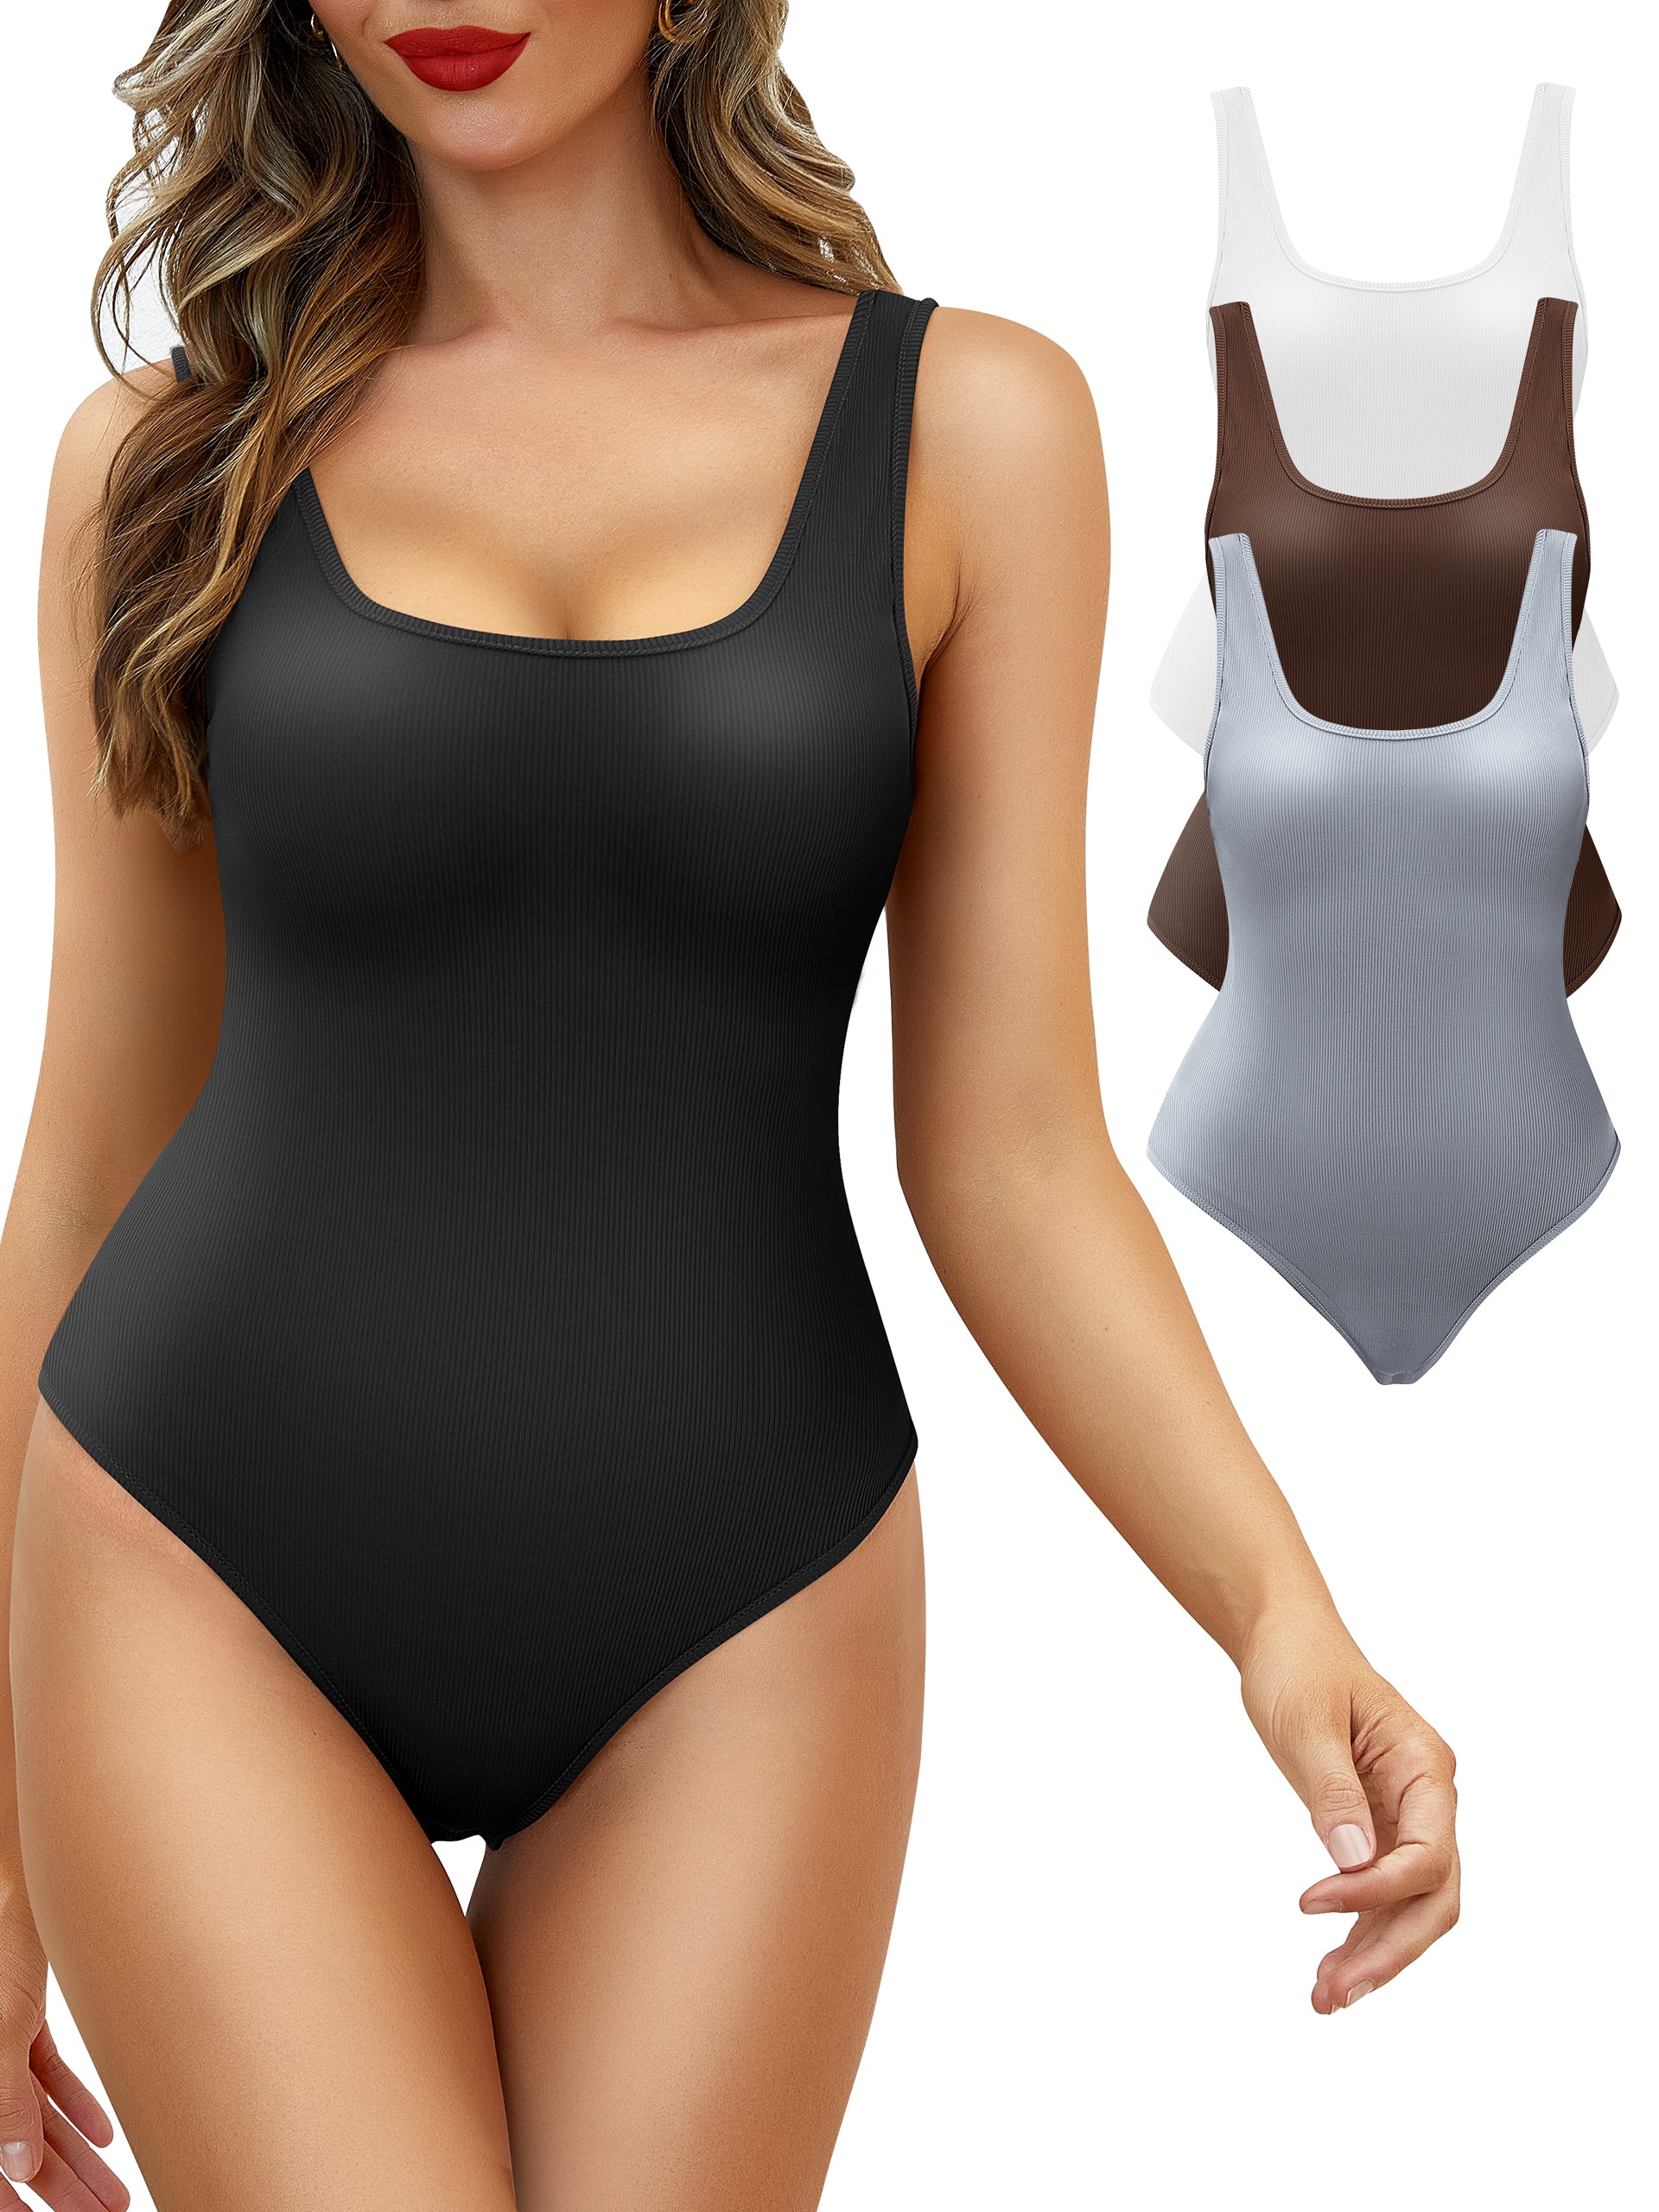 CHARMMA 3 Piece Tummy Control Bodysuits - Women's Backless Sexy